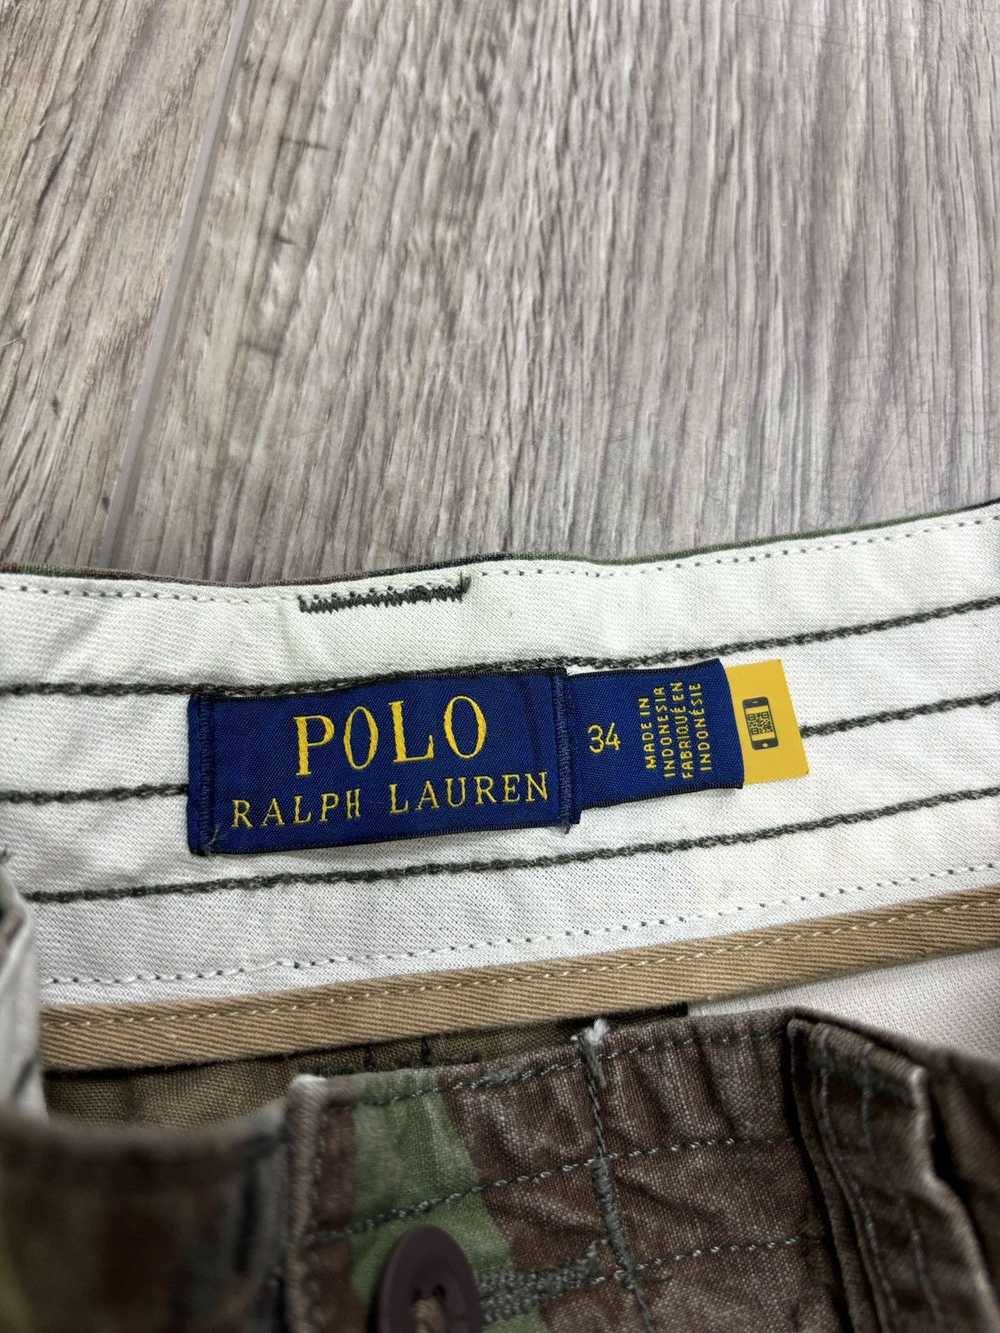 Polo Ralph Lauren Polo Ralph camo cargo shorts 34 - image 3